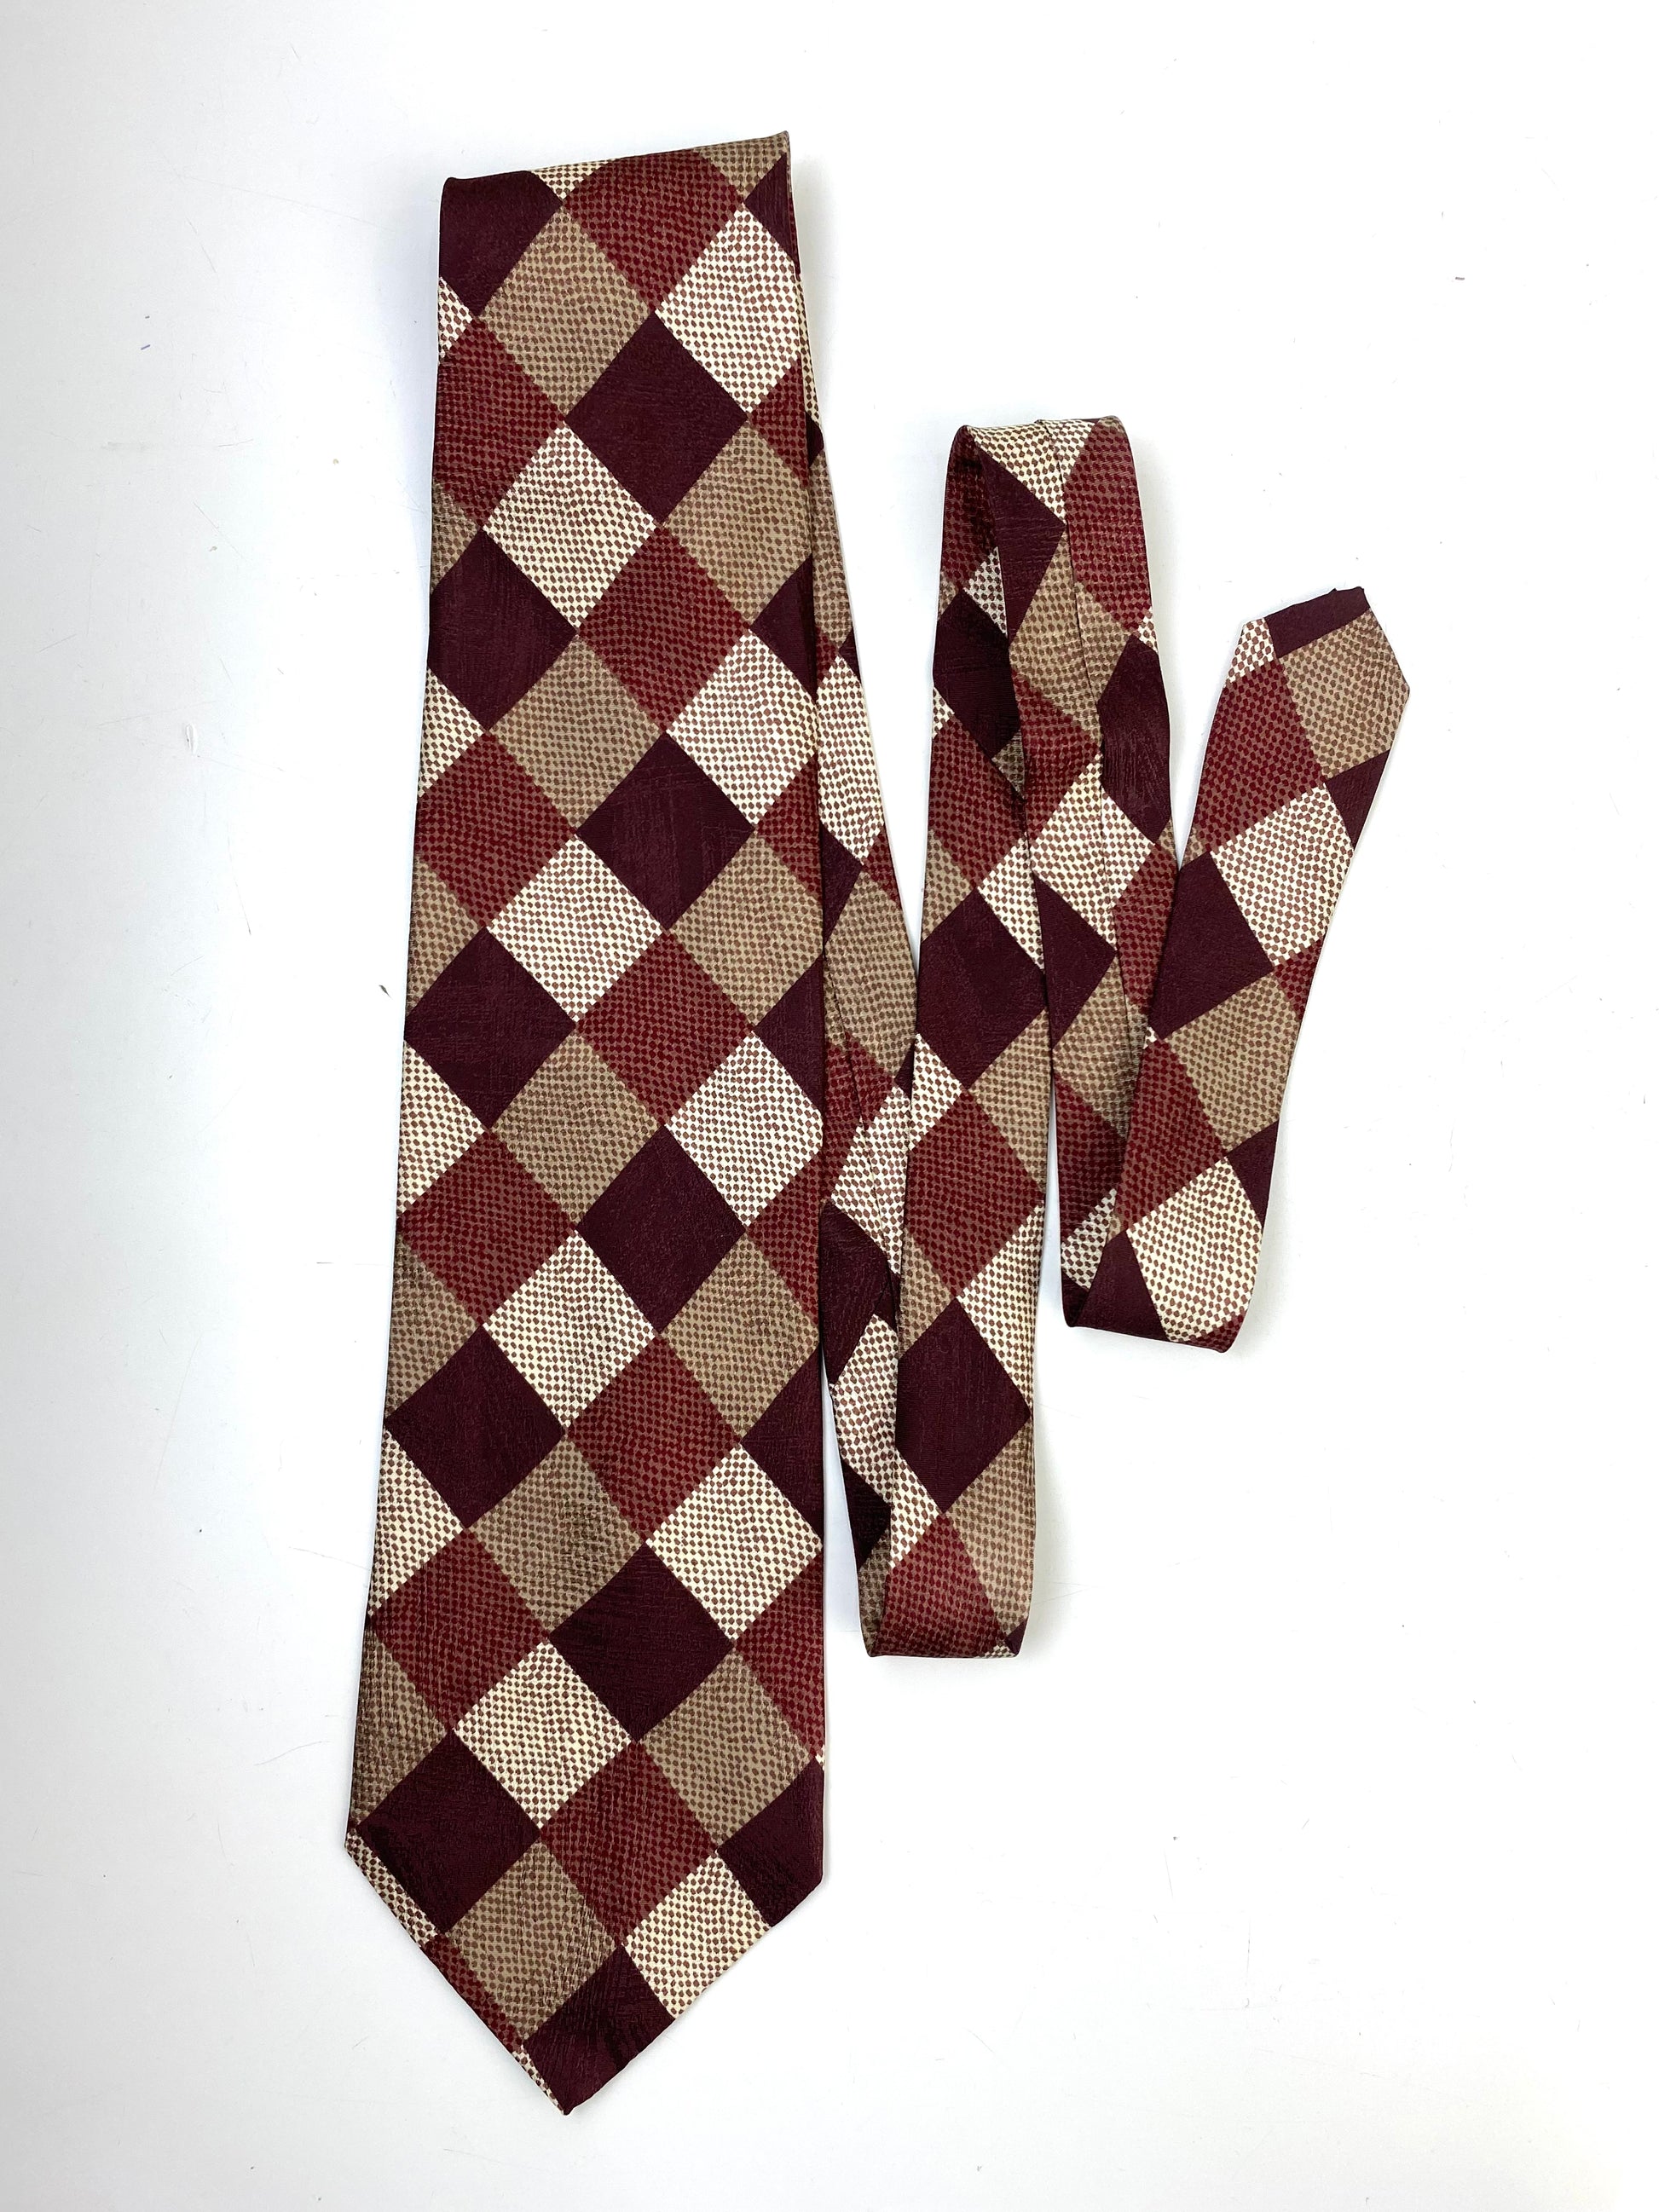 Front of: 90s Deadstock Silk Necktie, Men's Vintage Brown Checkered Pattern Tie, NOS